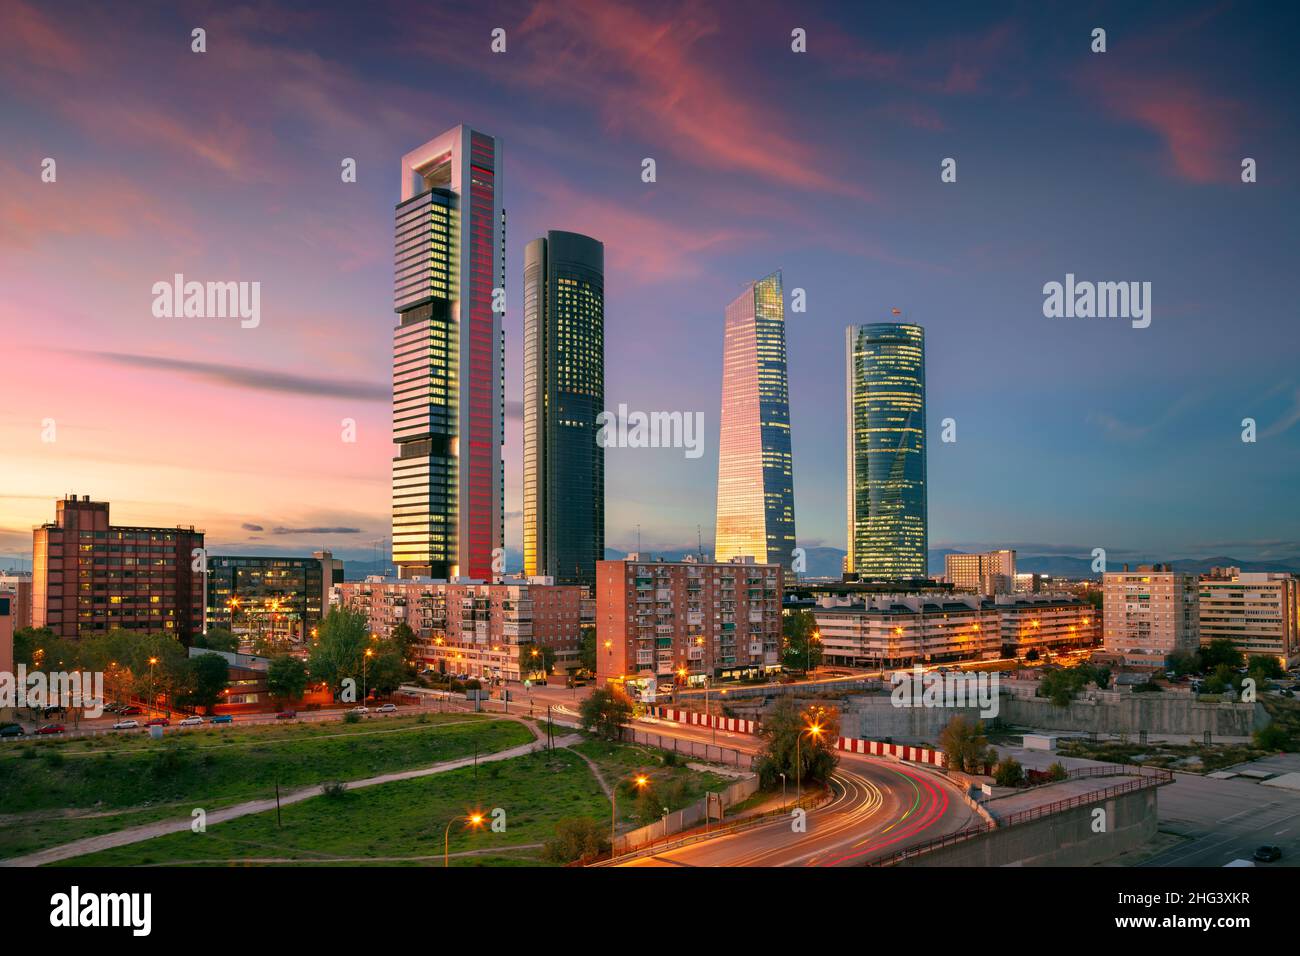 Madrid, Spagna. Immagine del paesaggio urbano del quartiere finanziario di Madrid, Spagna con moderni grattacieli al crepuscolo ora blu. Foto Stock